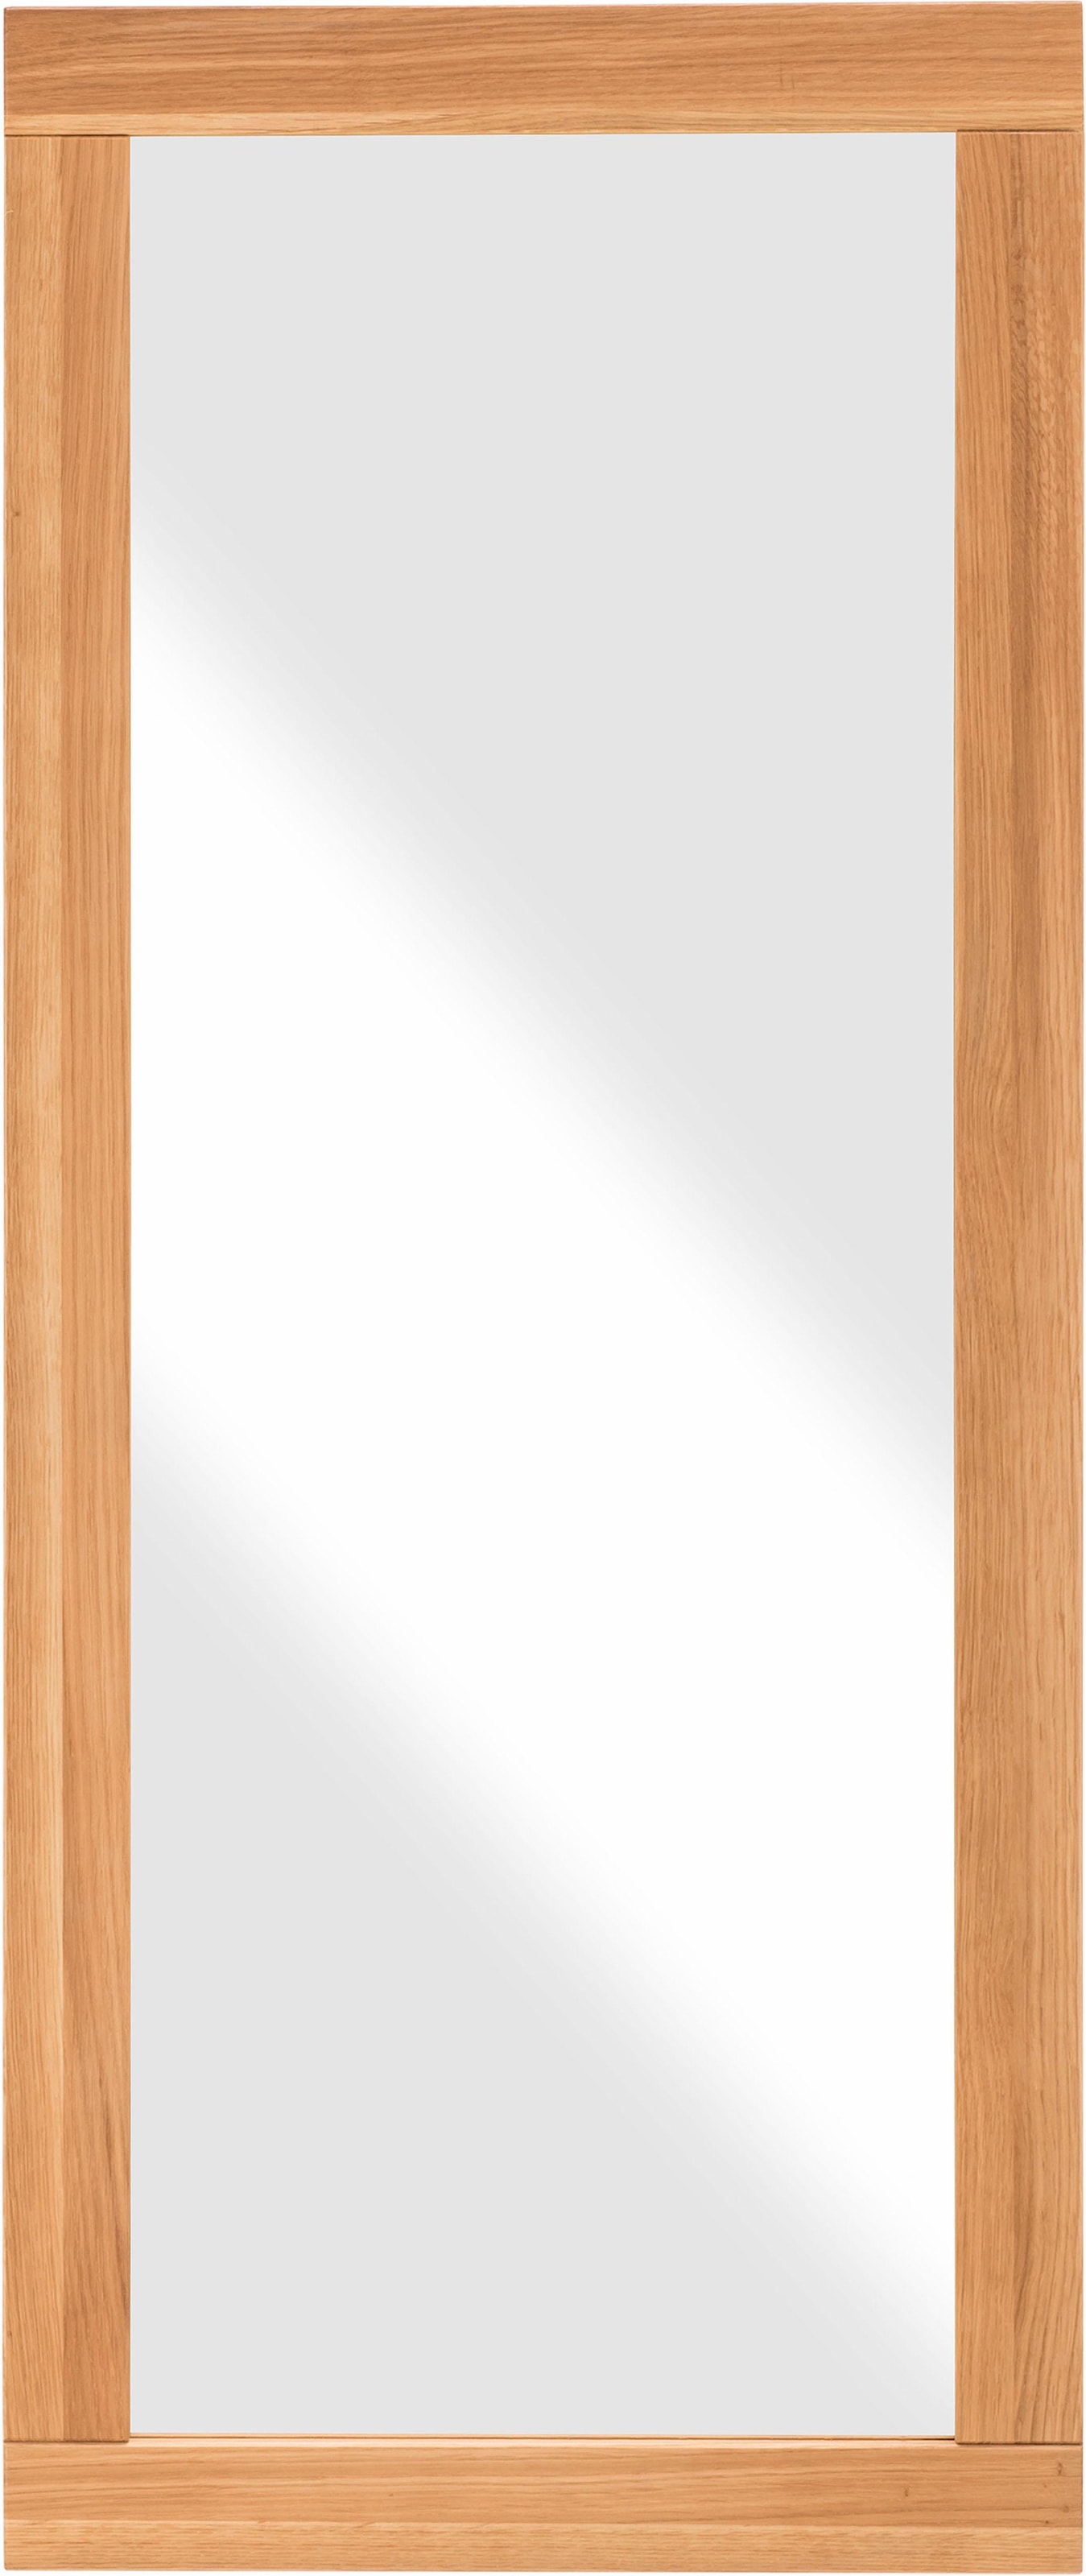 Home affaire Wandspiegel Shop aus Online »Dura«, 50 cm im Breite FSC-zertifiziertem Massivholz, OTTO